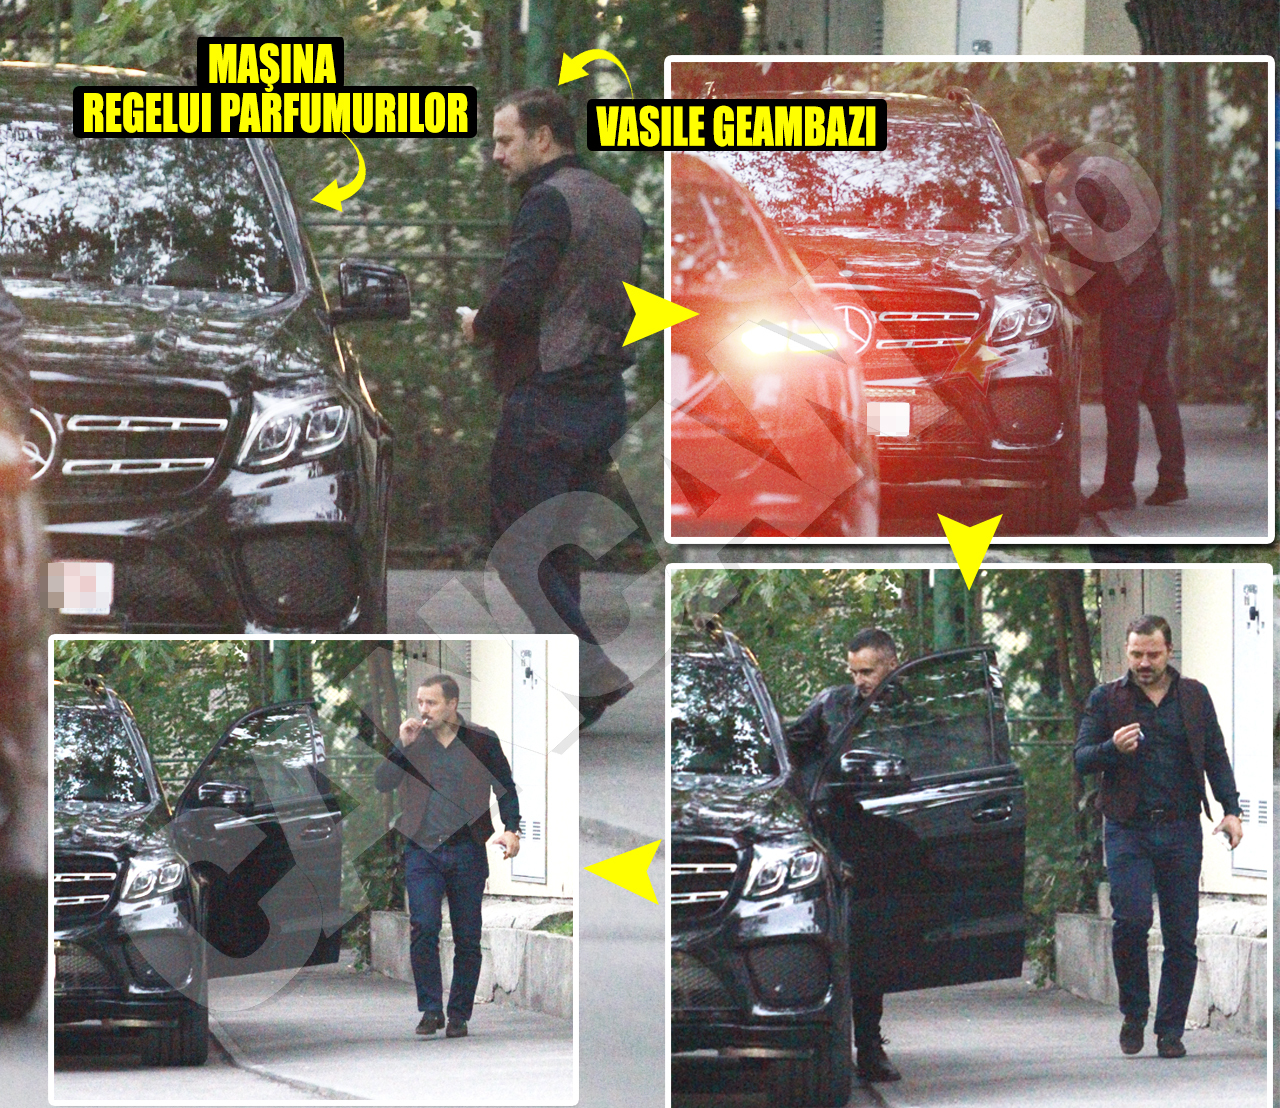 După ce a aruncat o privire în interiorul Mercedesului GLS, Vasile Geambazi s-a retras stânjenit de lângă maşină în momentul în care a apărut şoferul ”Regelui parfumurilor”